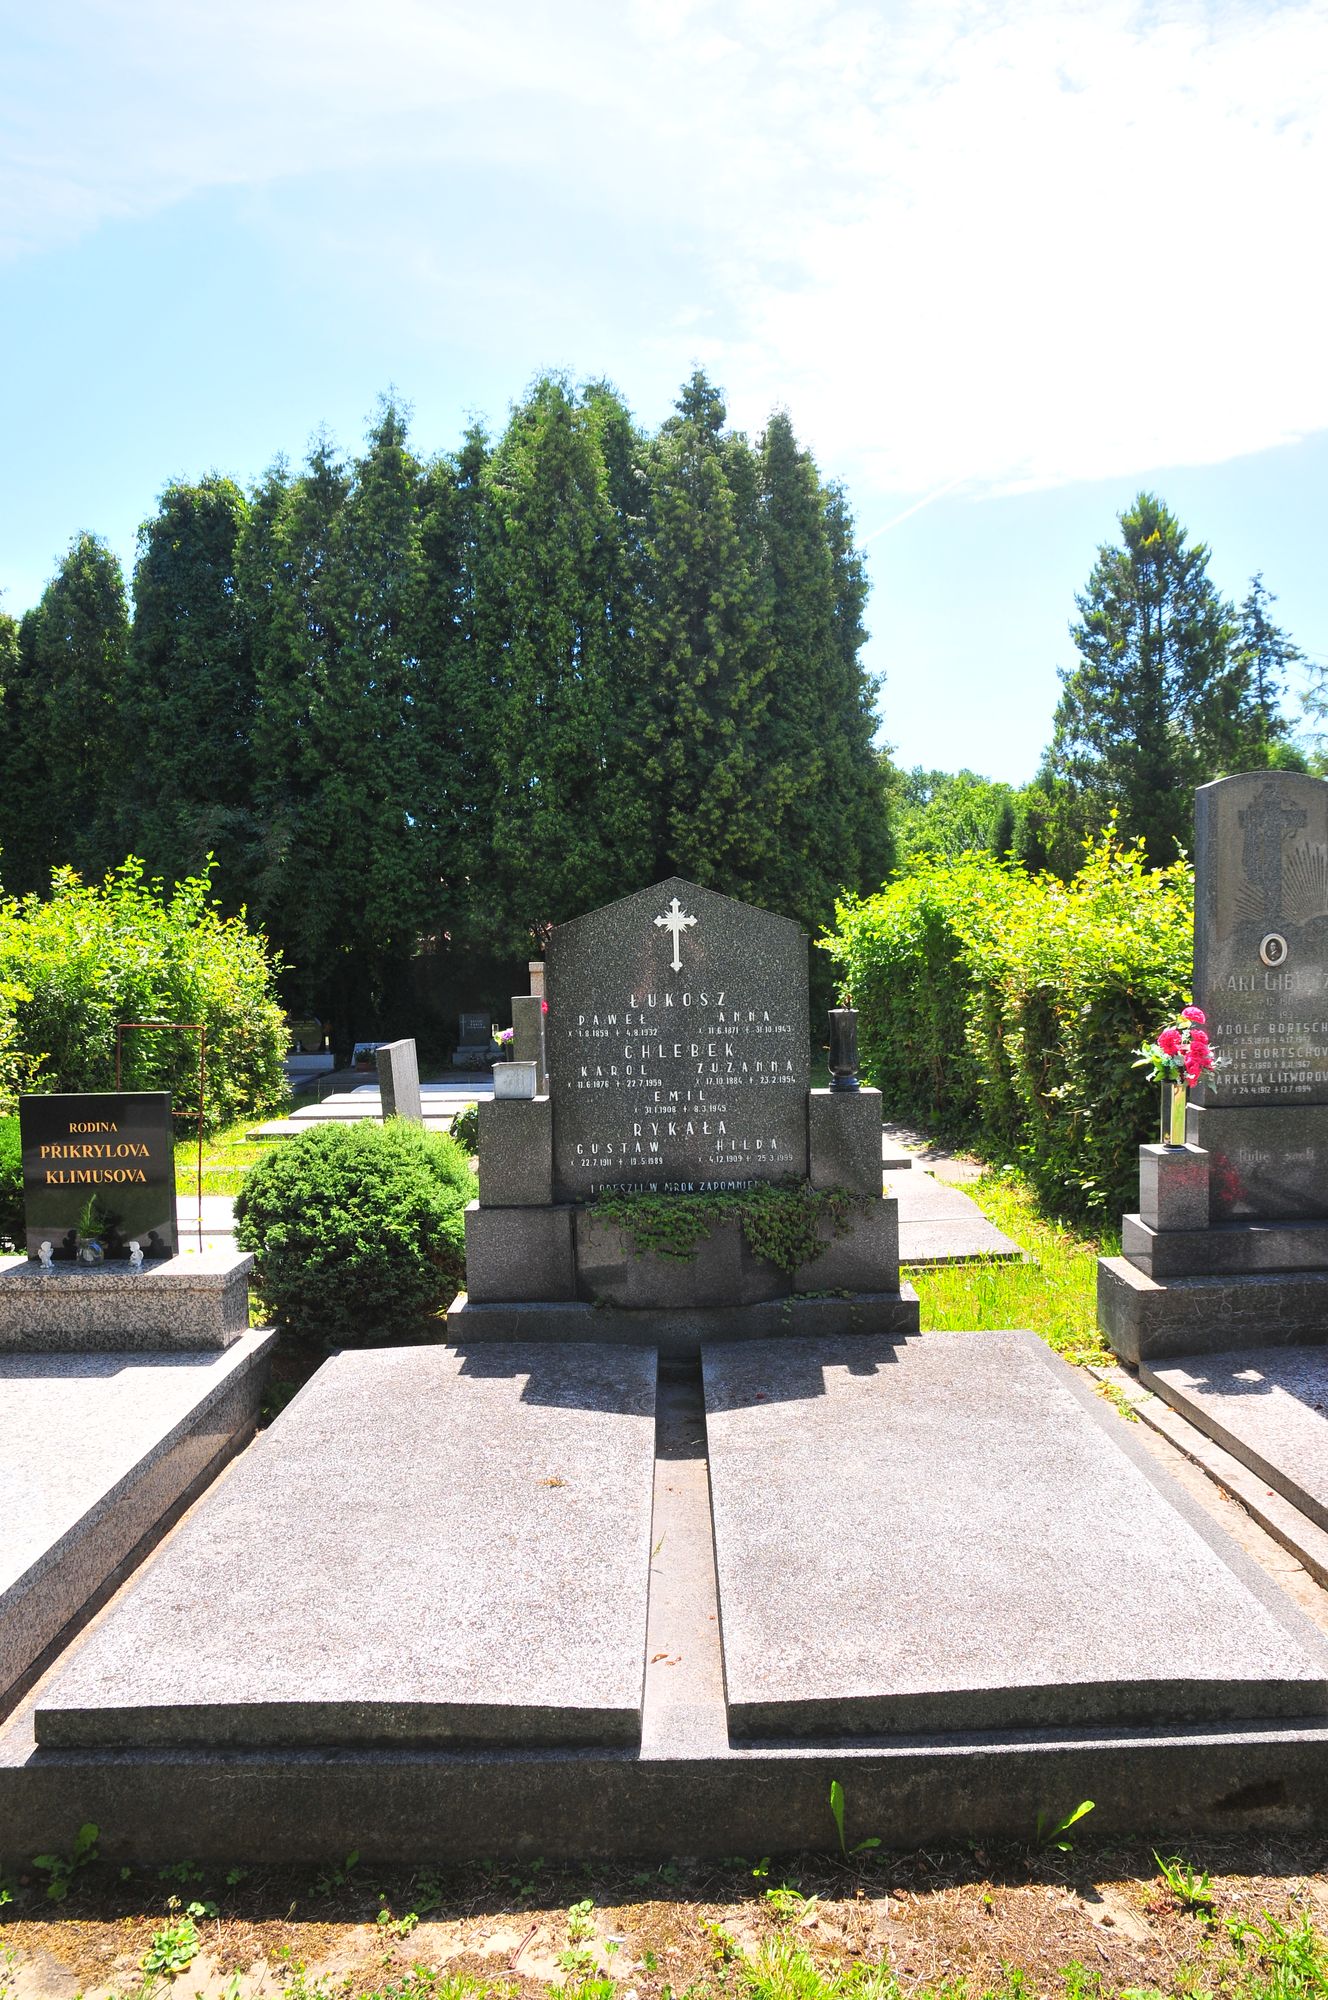 Tombstone of the Łukosz, Chlebek, Rykała families